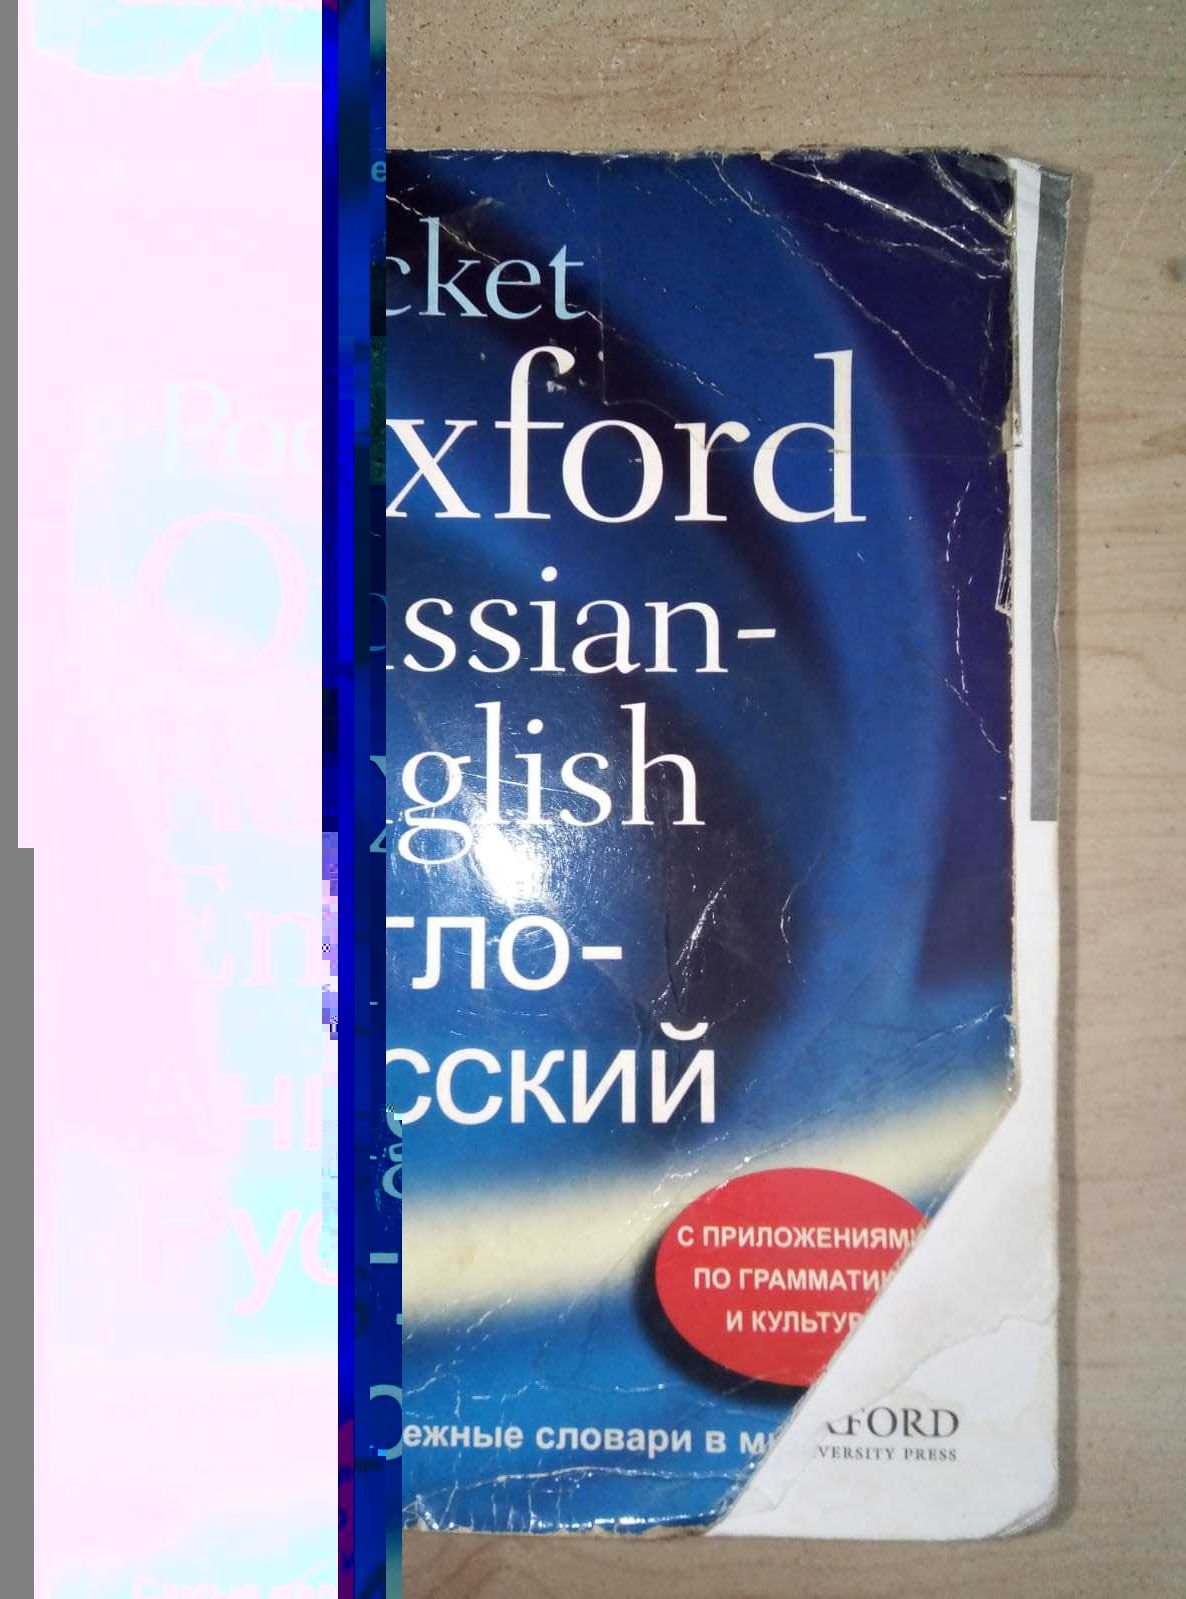 Продам русско-французский словарь срочно недорого